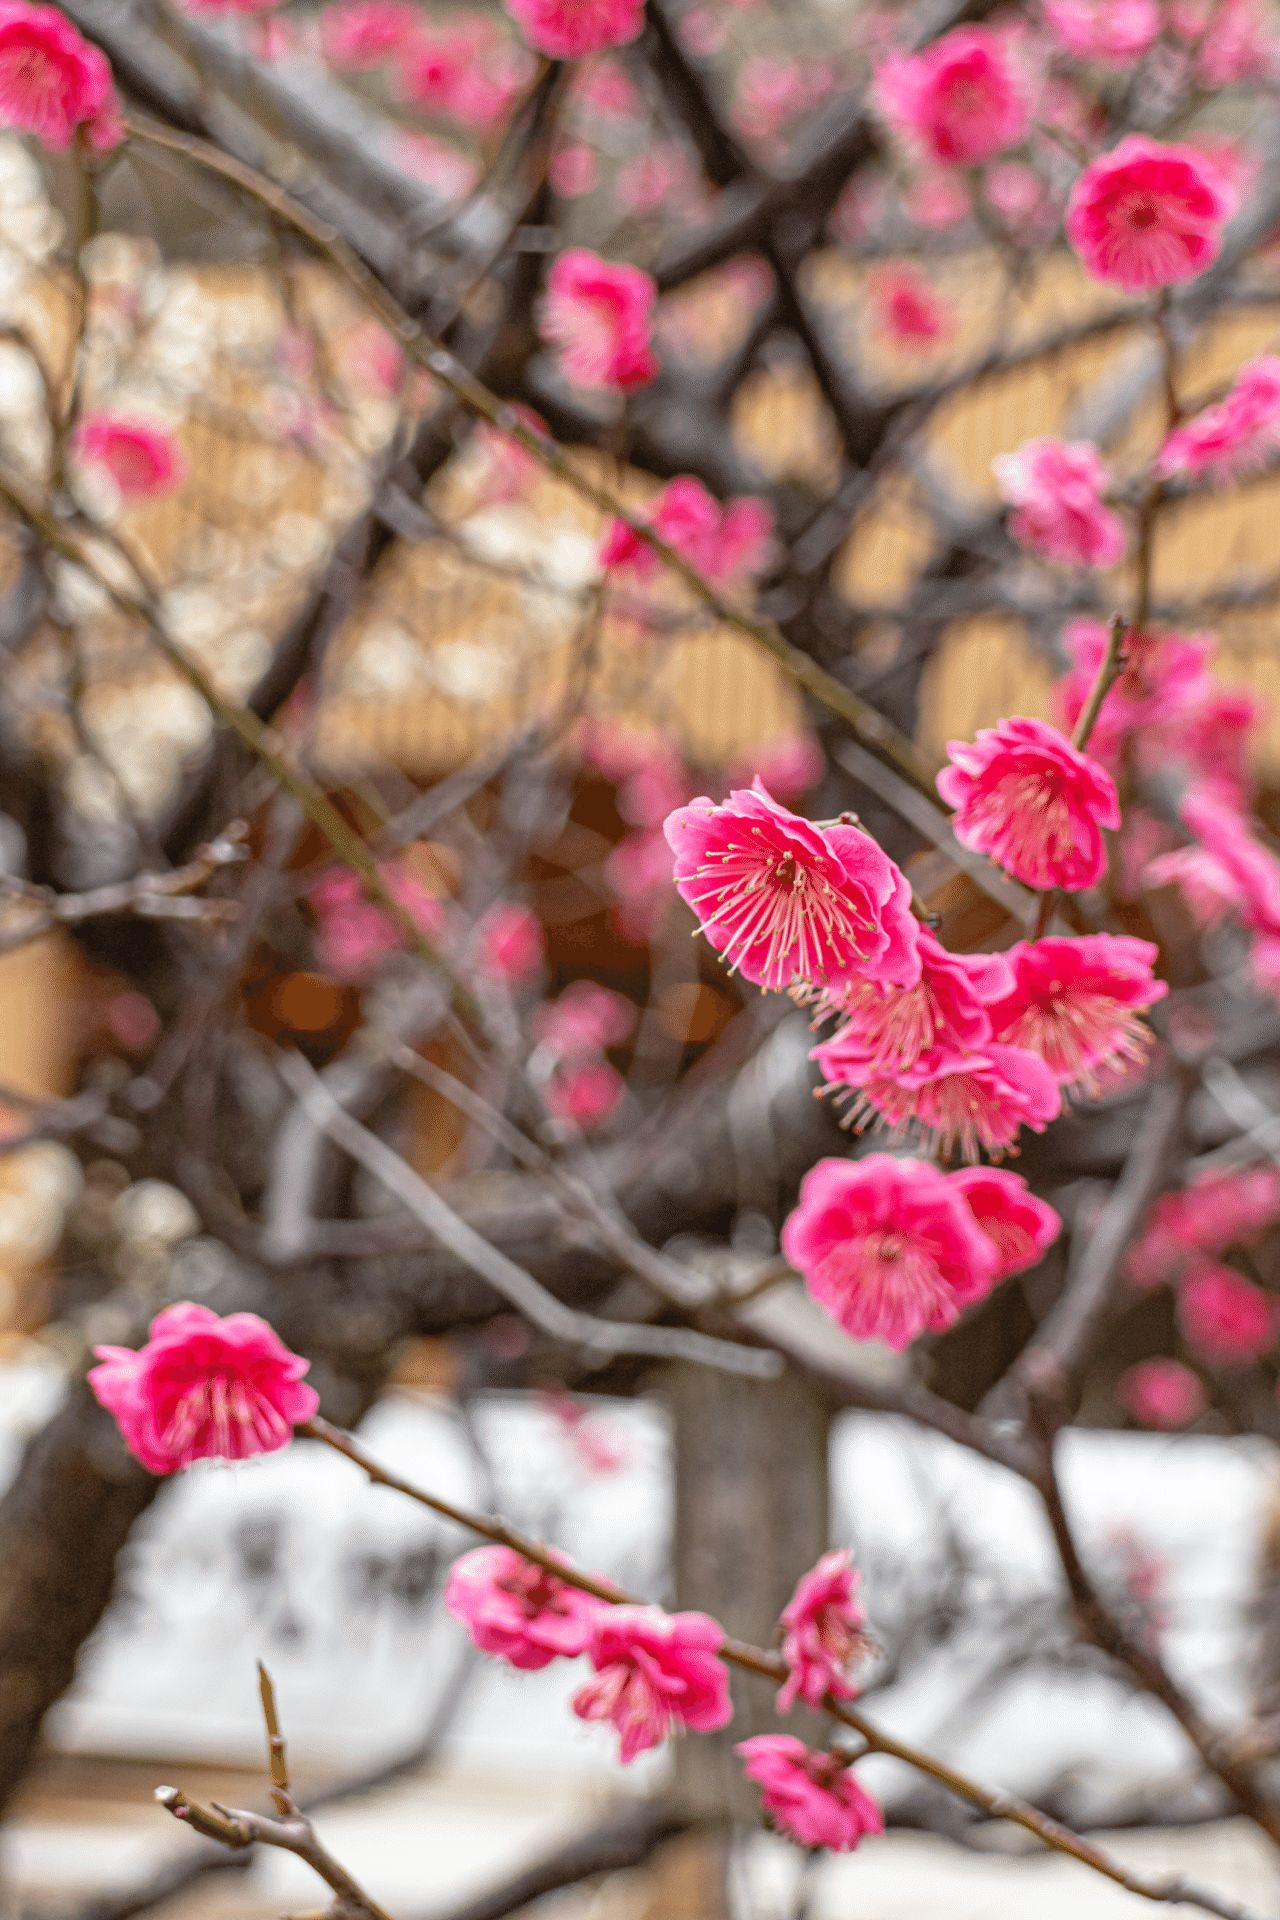 新潟総鎮守白山神社に植樹された紅梅「蘇芳梅(すおうばい)」